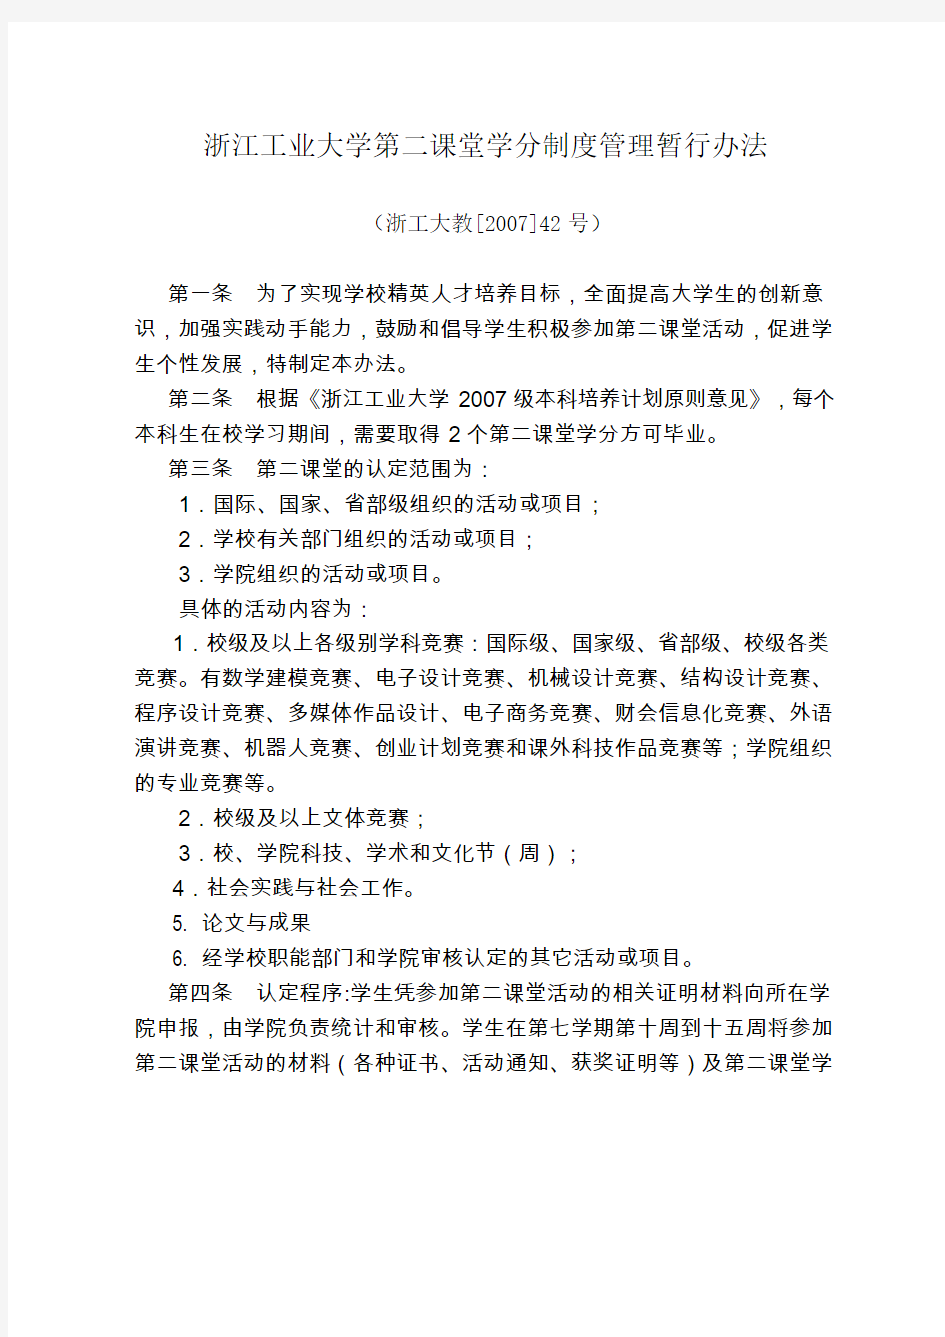 浙江工业大学第二课堂学分制度管理暂行办法